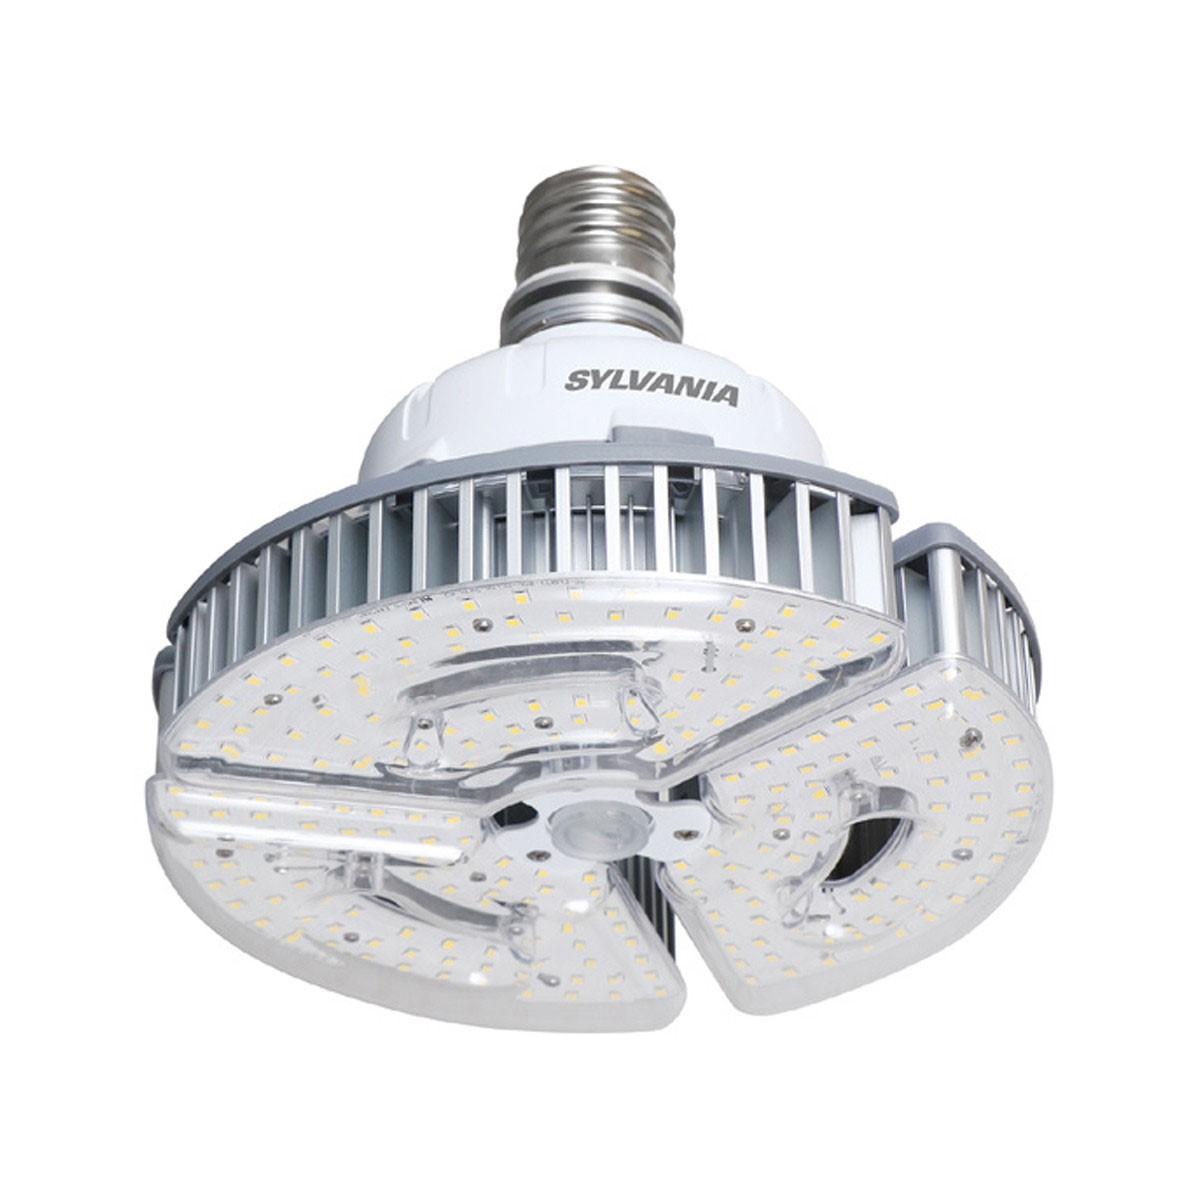 LED High Bay Retrofit Lamp, 100W, 14000 Lumens, 4000K, EX39 Mogul Extended Mogul Base, 120-277V